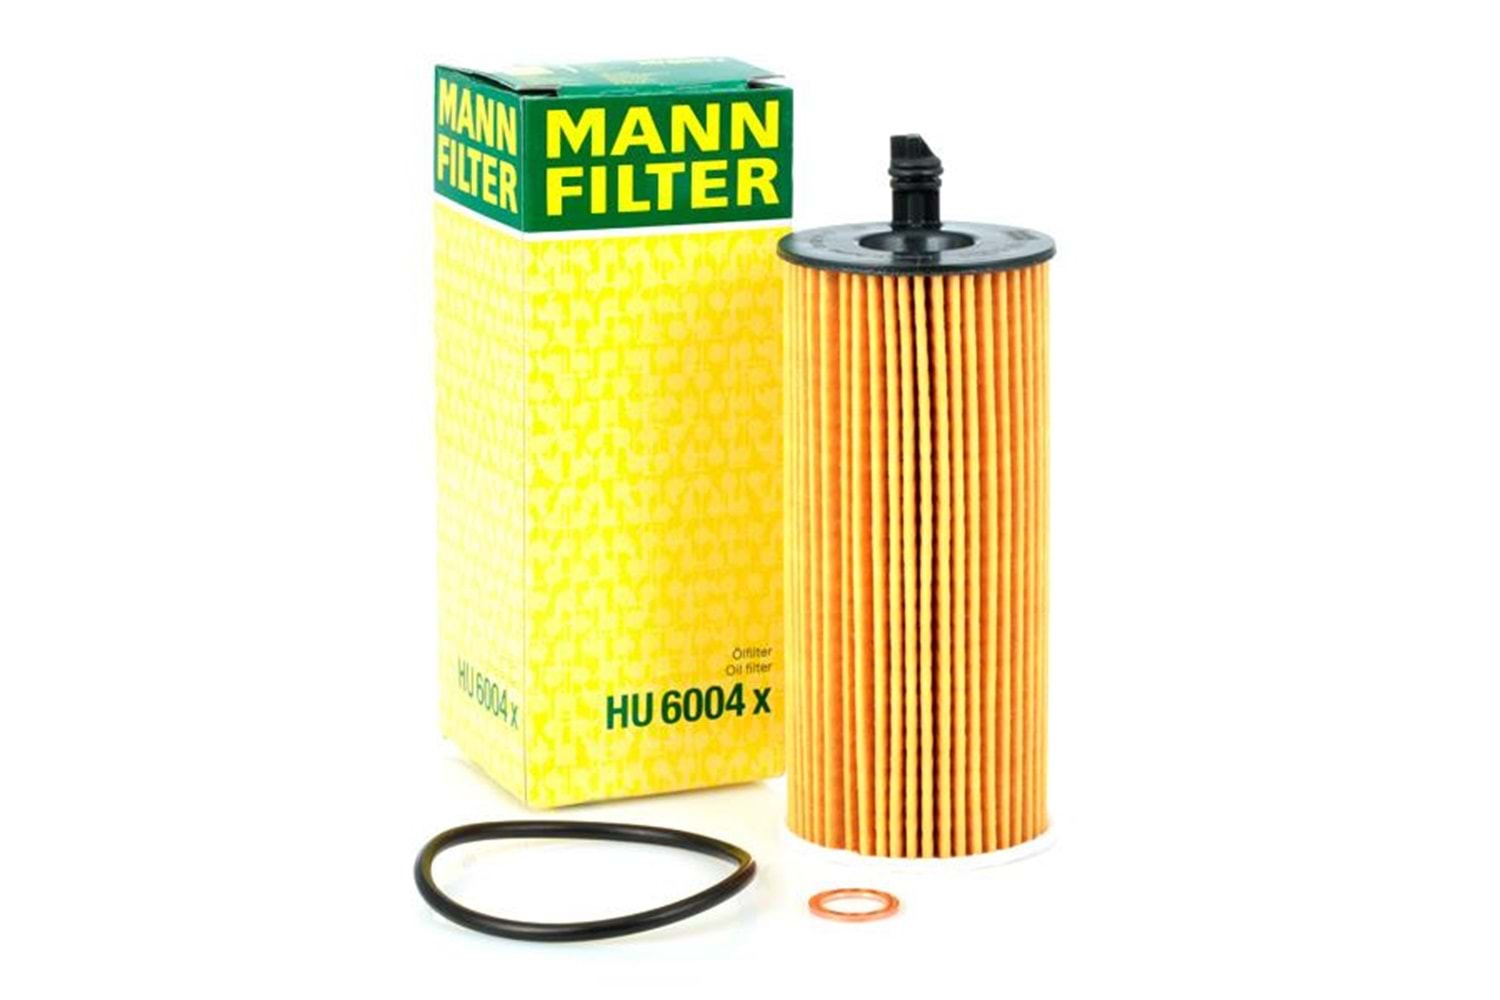 Mann Filter Yağ Filtresi HU6004X